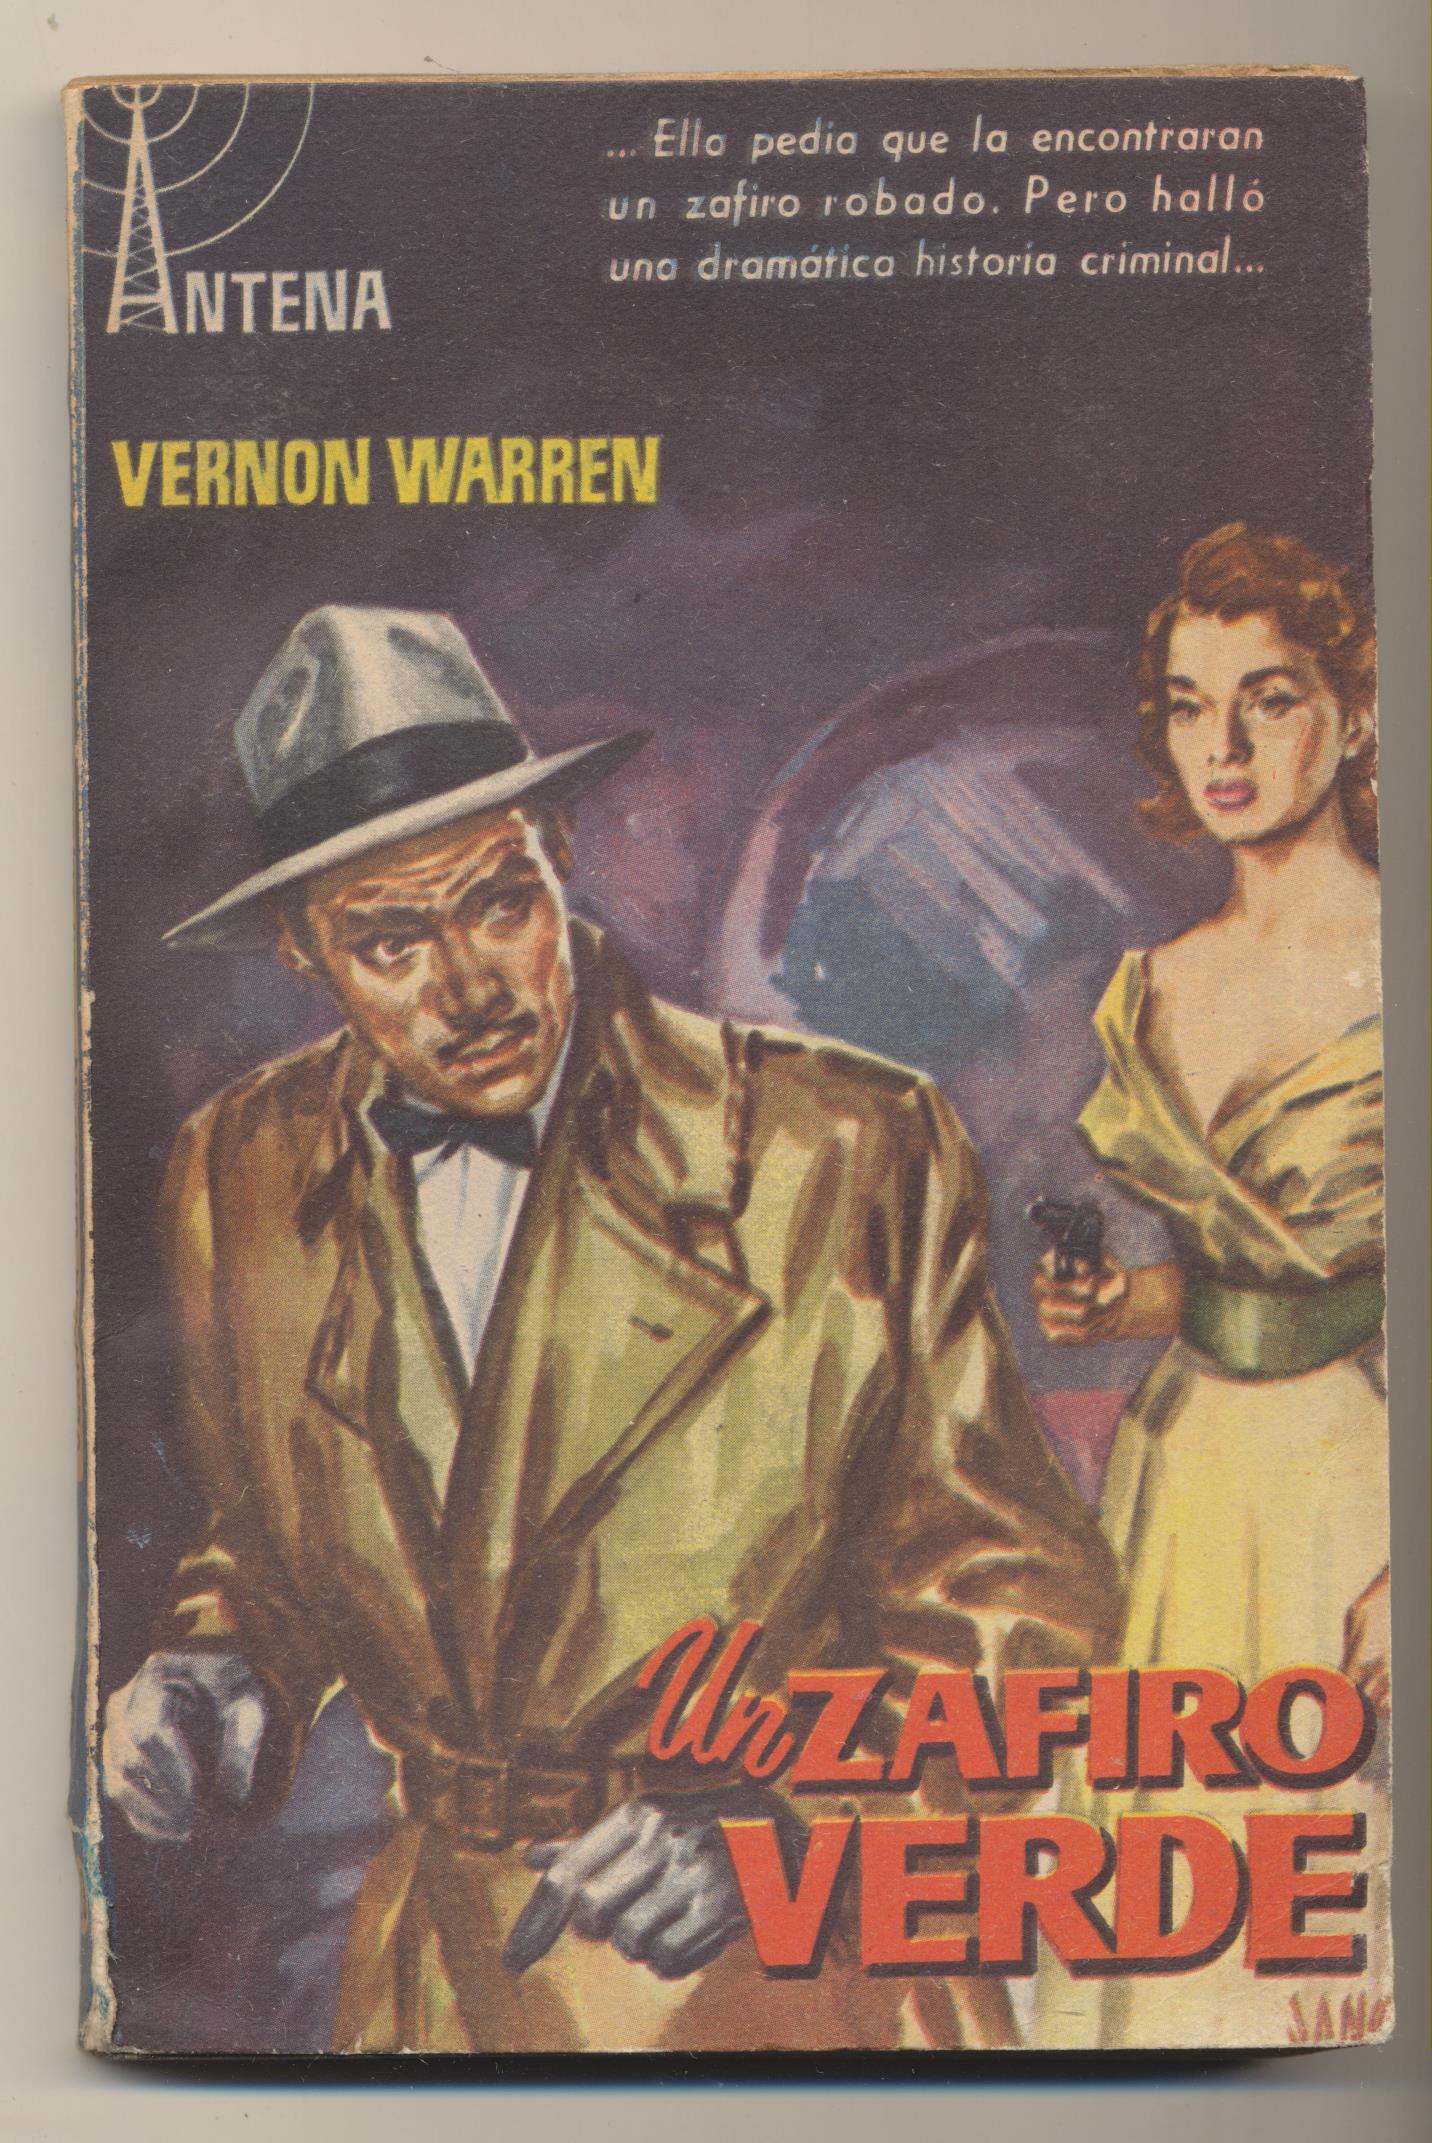 Colección Antena nº 23. Un zafiro verde por Vernon Guarren. 1ª Edición Cid 1958